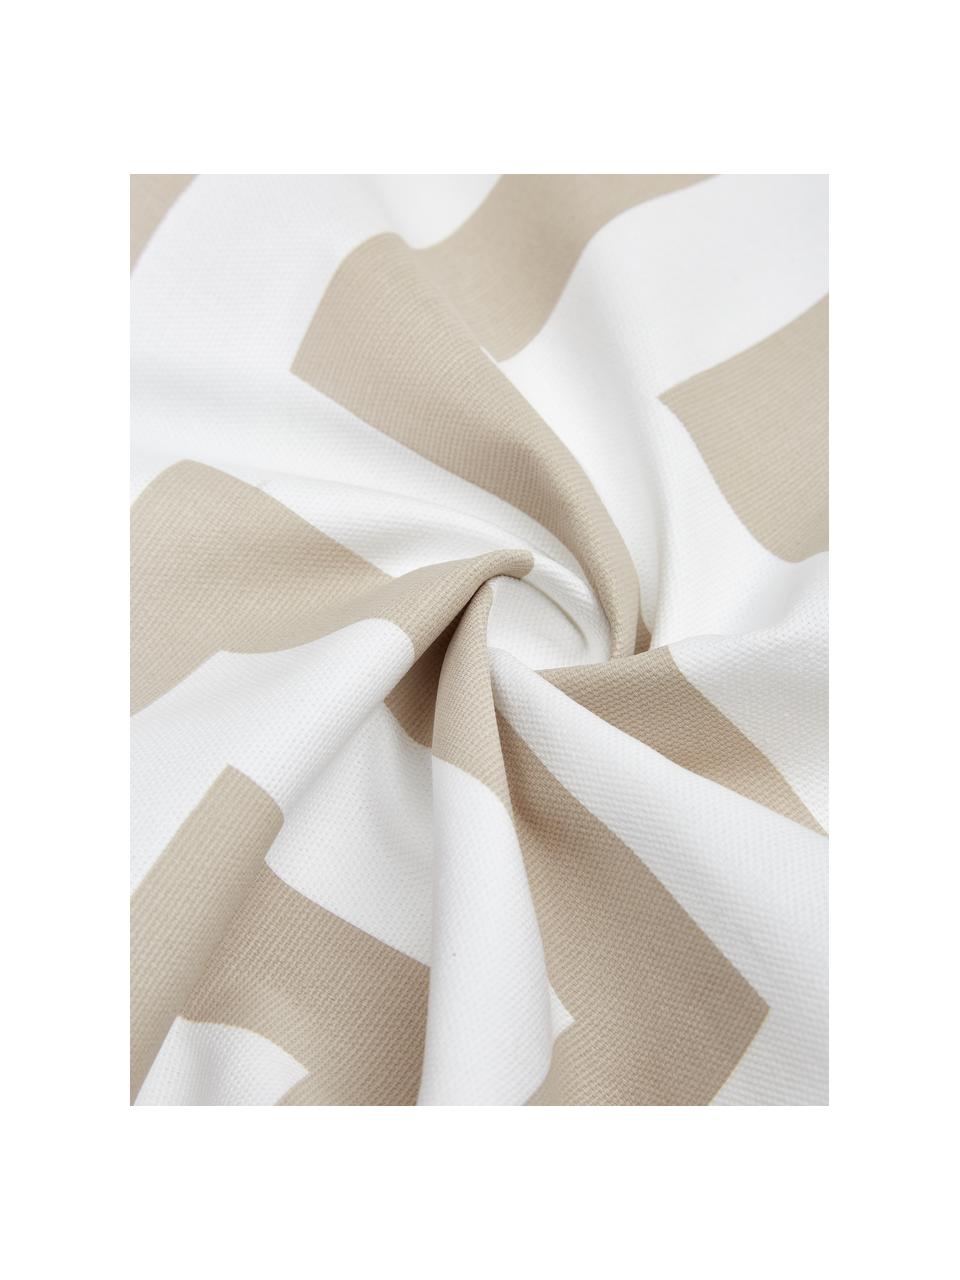 Baumwoll-Kissenhülle Bram mit grafischem Muster, 100% Baumwolle, Beige, Weiß, B 45 x L 45 cm